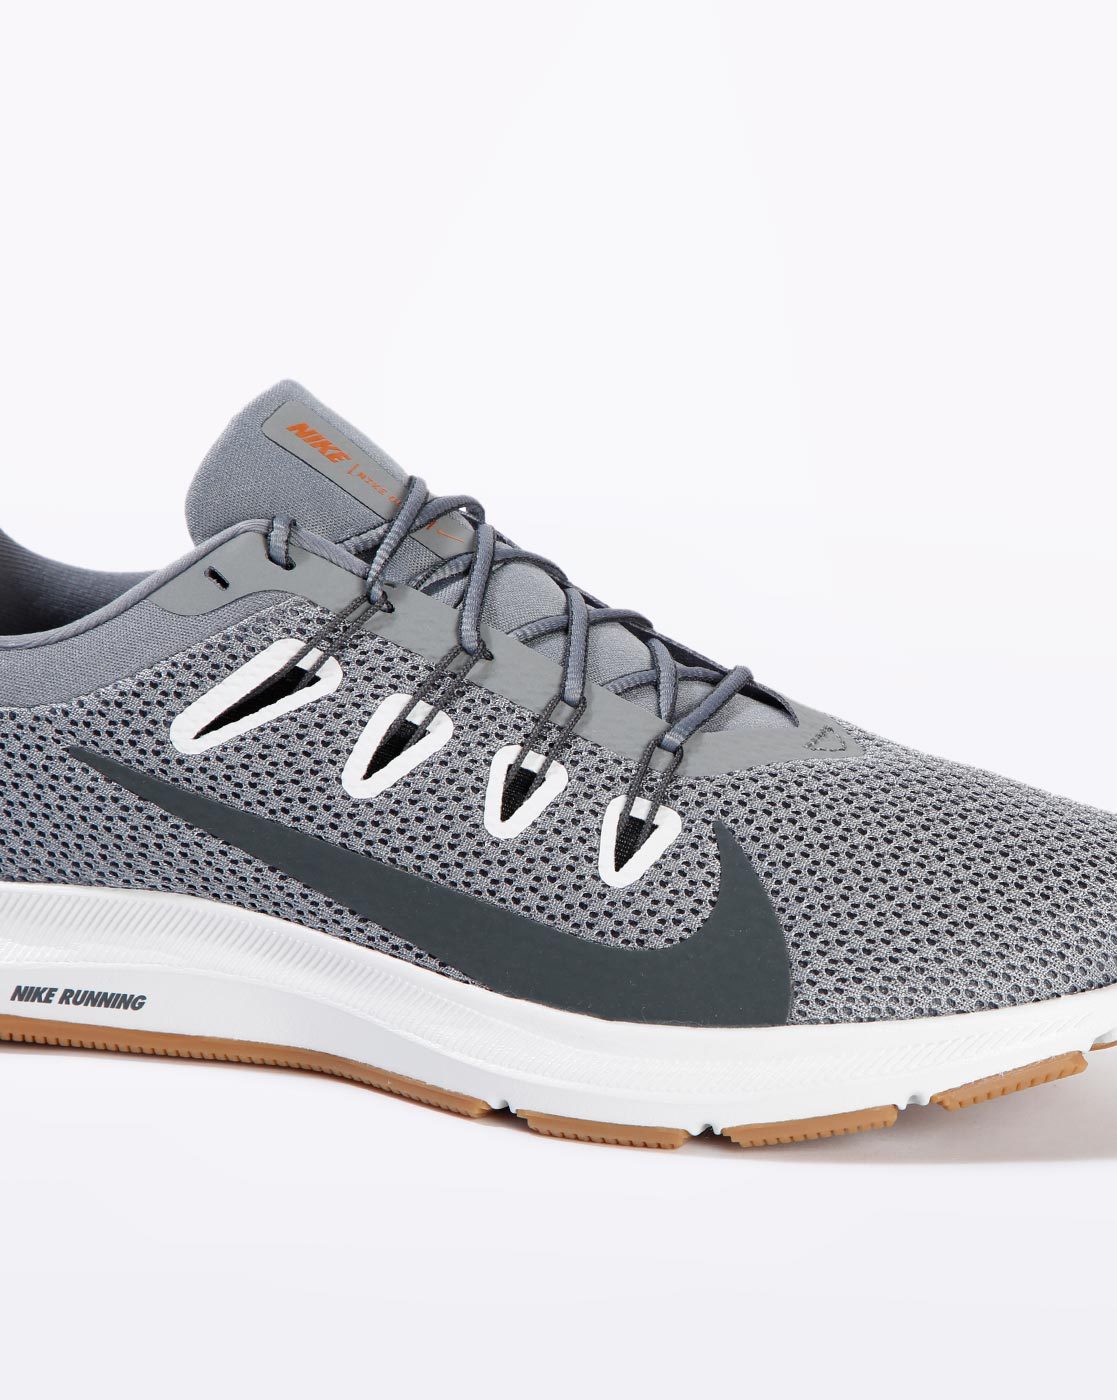 Nike Femme WMNS Quest 2 Chaussures de Running, Gris (Cool Grey